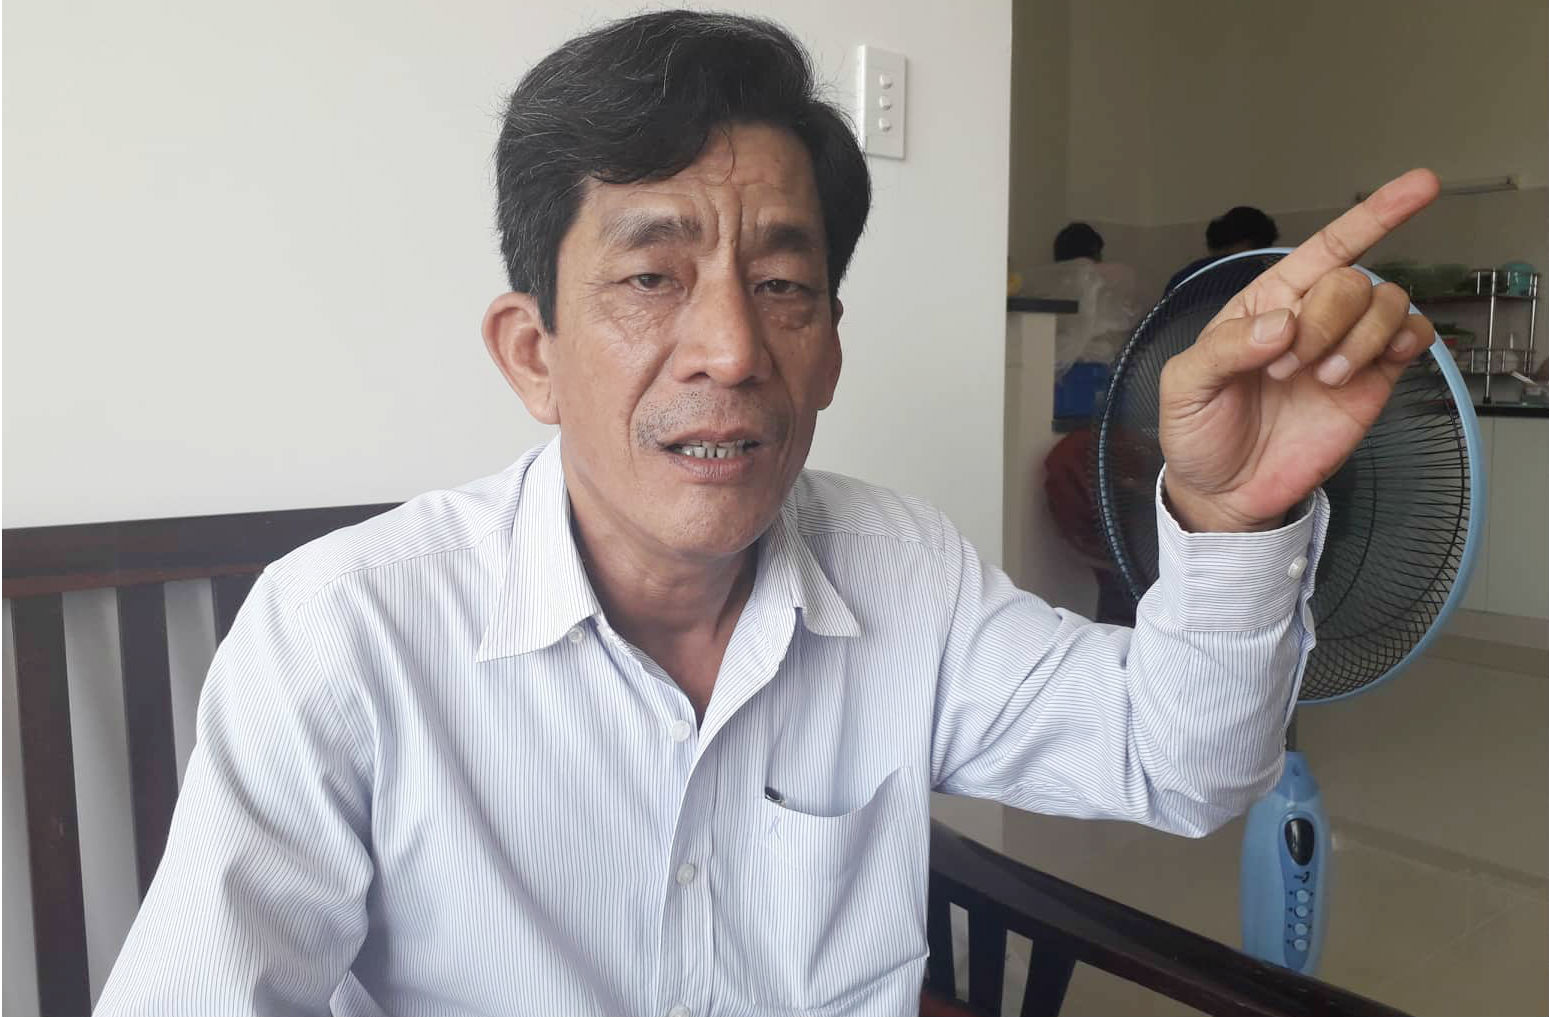 Ông Nguyễn Văn Lung nói rằng không đồng tình với chính sách đền bù dự kiến của chính quyền TP.HCM về khu đất 4,3 ha ngoài ranh quy hoạch Thủ Thiêm